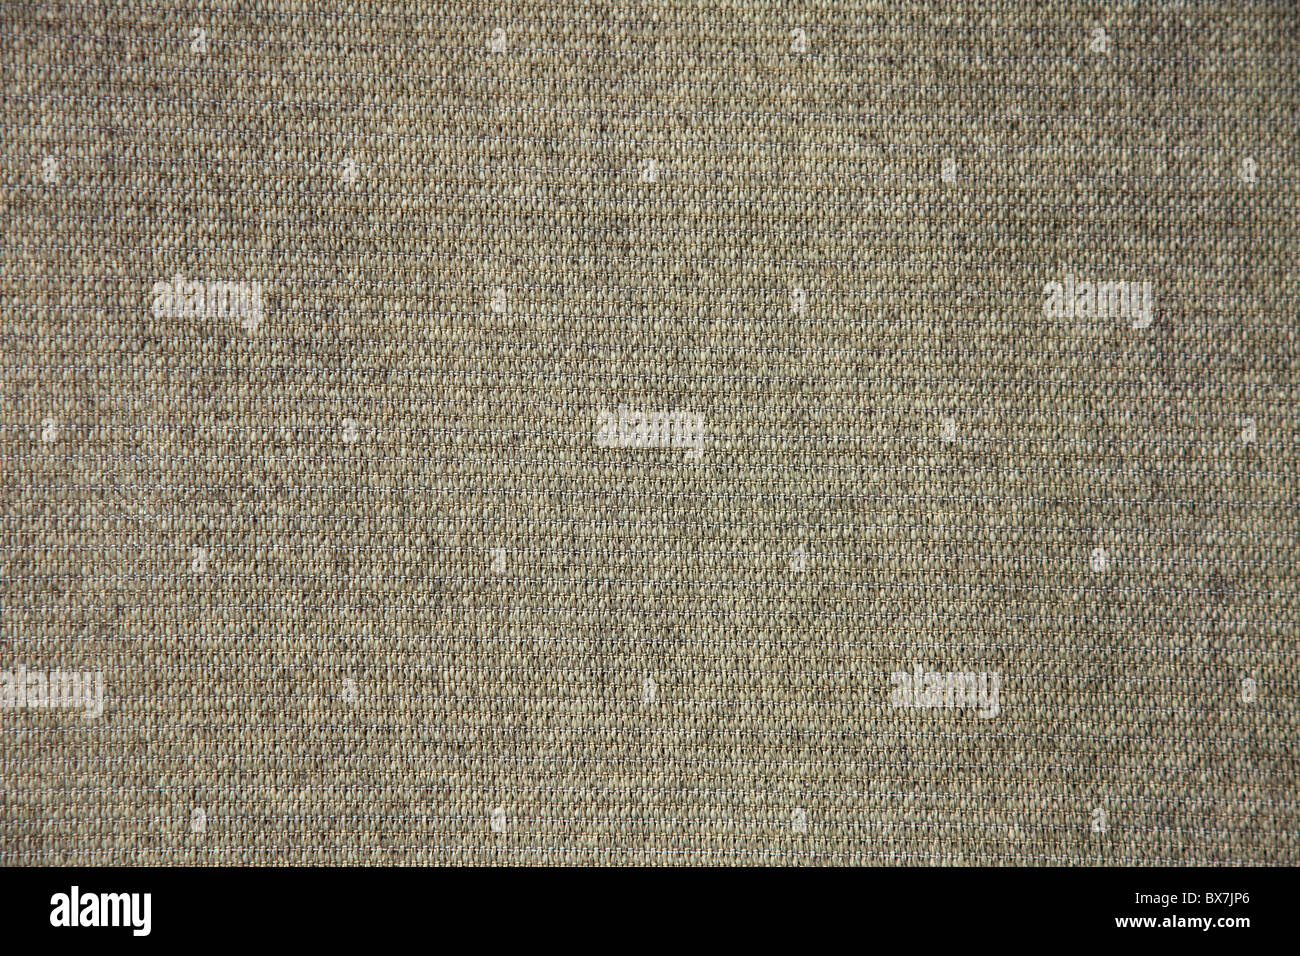 Texture of light brown sailcloth Stock Photo - Alamy